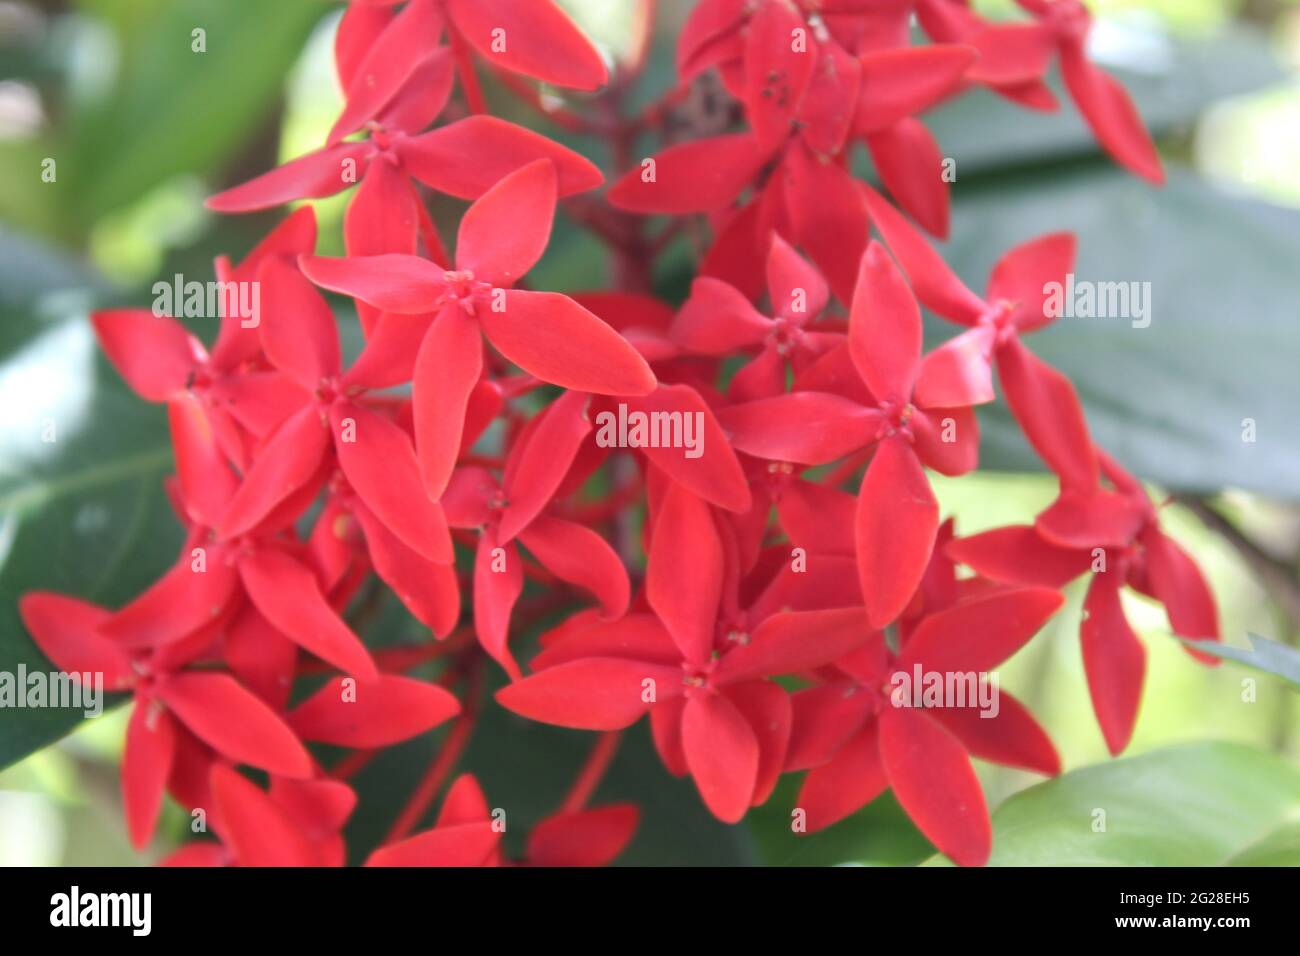 Leuchtendes Rot kleiner Blumenstrauß: Waldflamme (Rubiaceae) Ixora coccinea L. -- Dschungelgeranie, Nadelblume, Dschungelgeranie Stockfoto